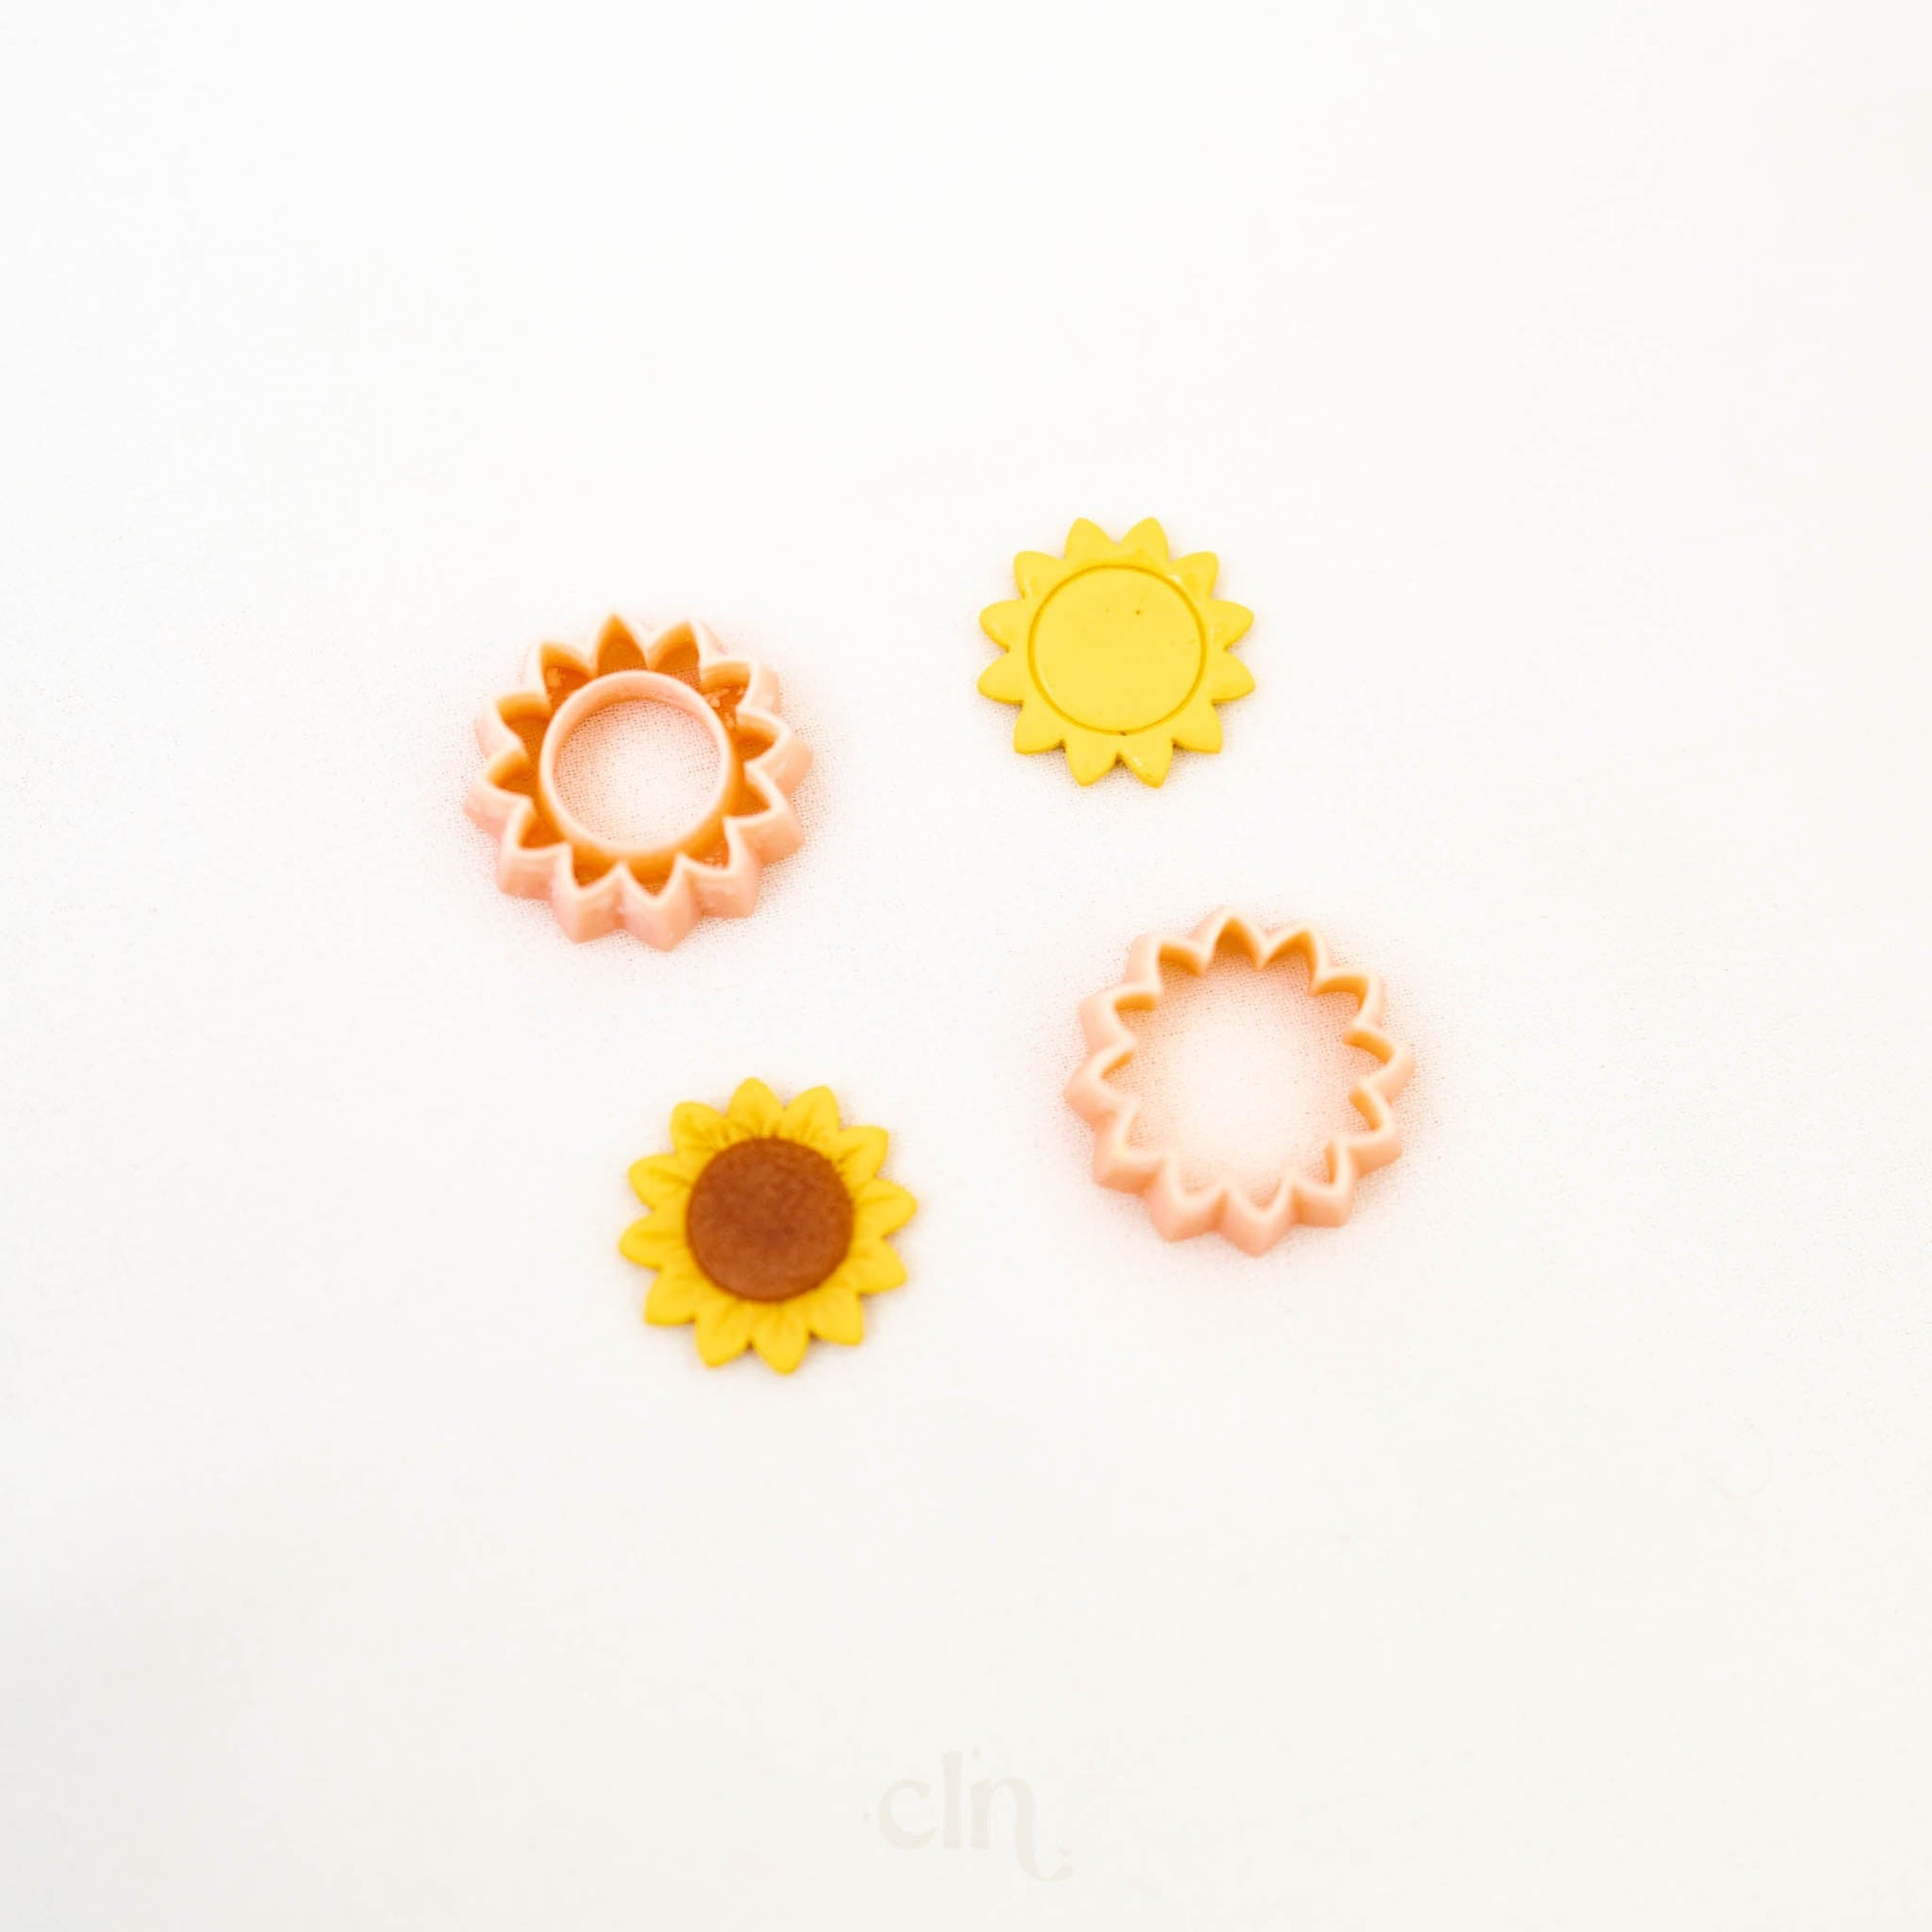 Sun(flower) - Cutter - CLN Atelier